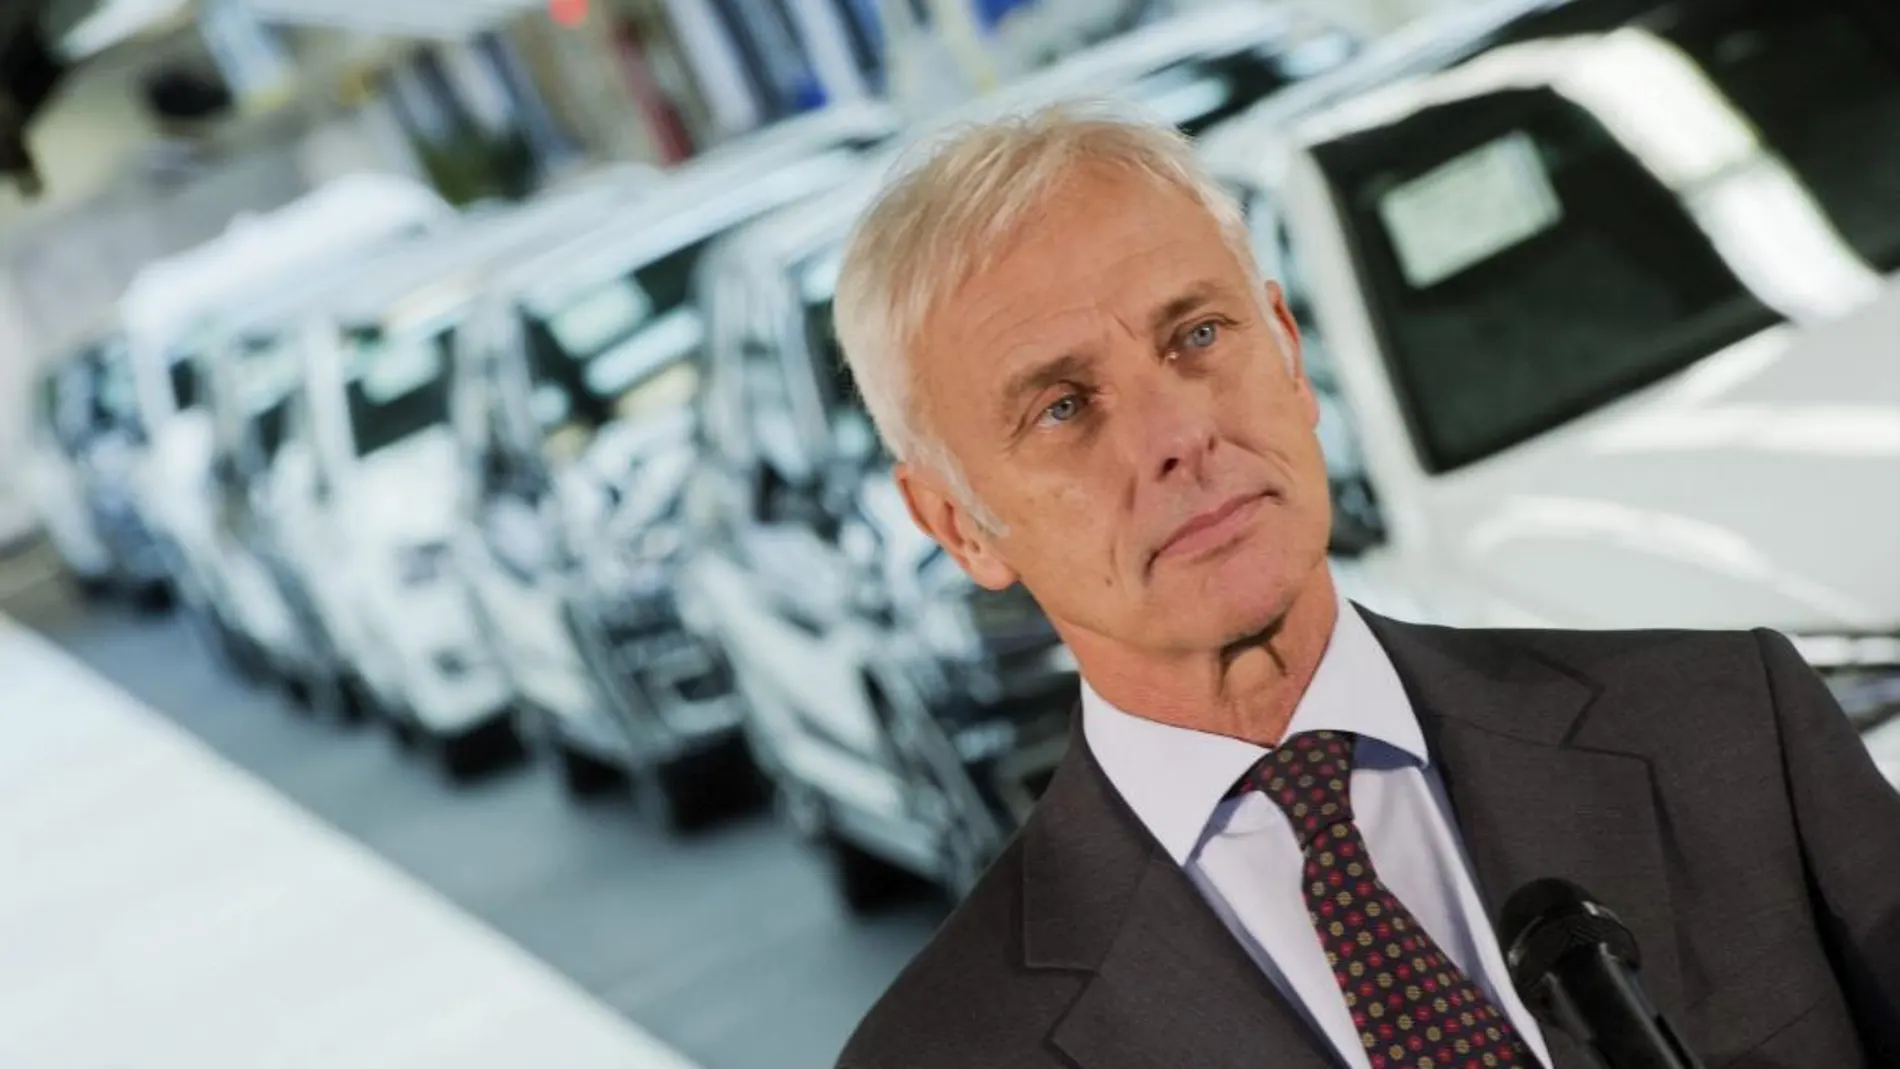 El presidente del grupo Volkswagen, Matthias Müller, se dirige a los medios tras su visita a la planta de Volkswagen en Wolfsburgo